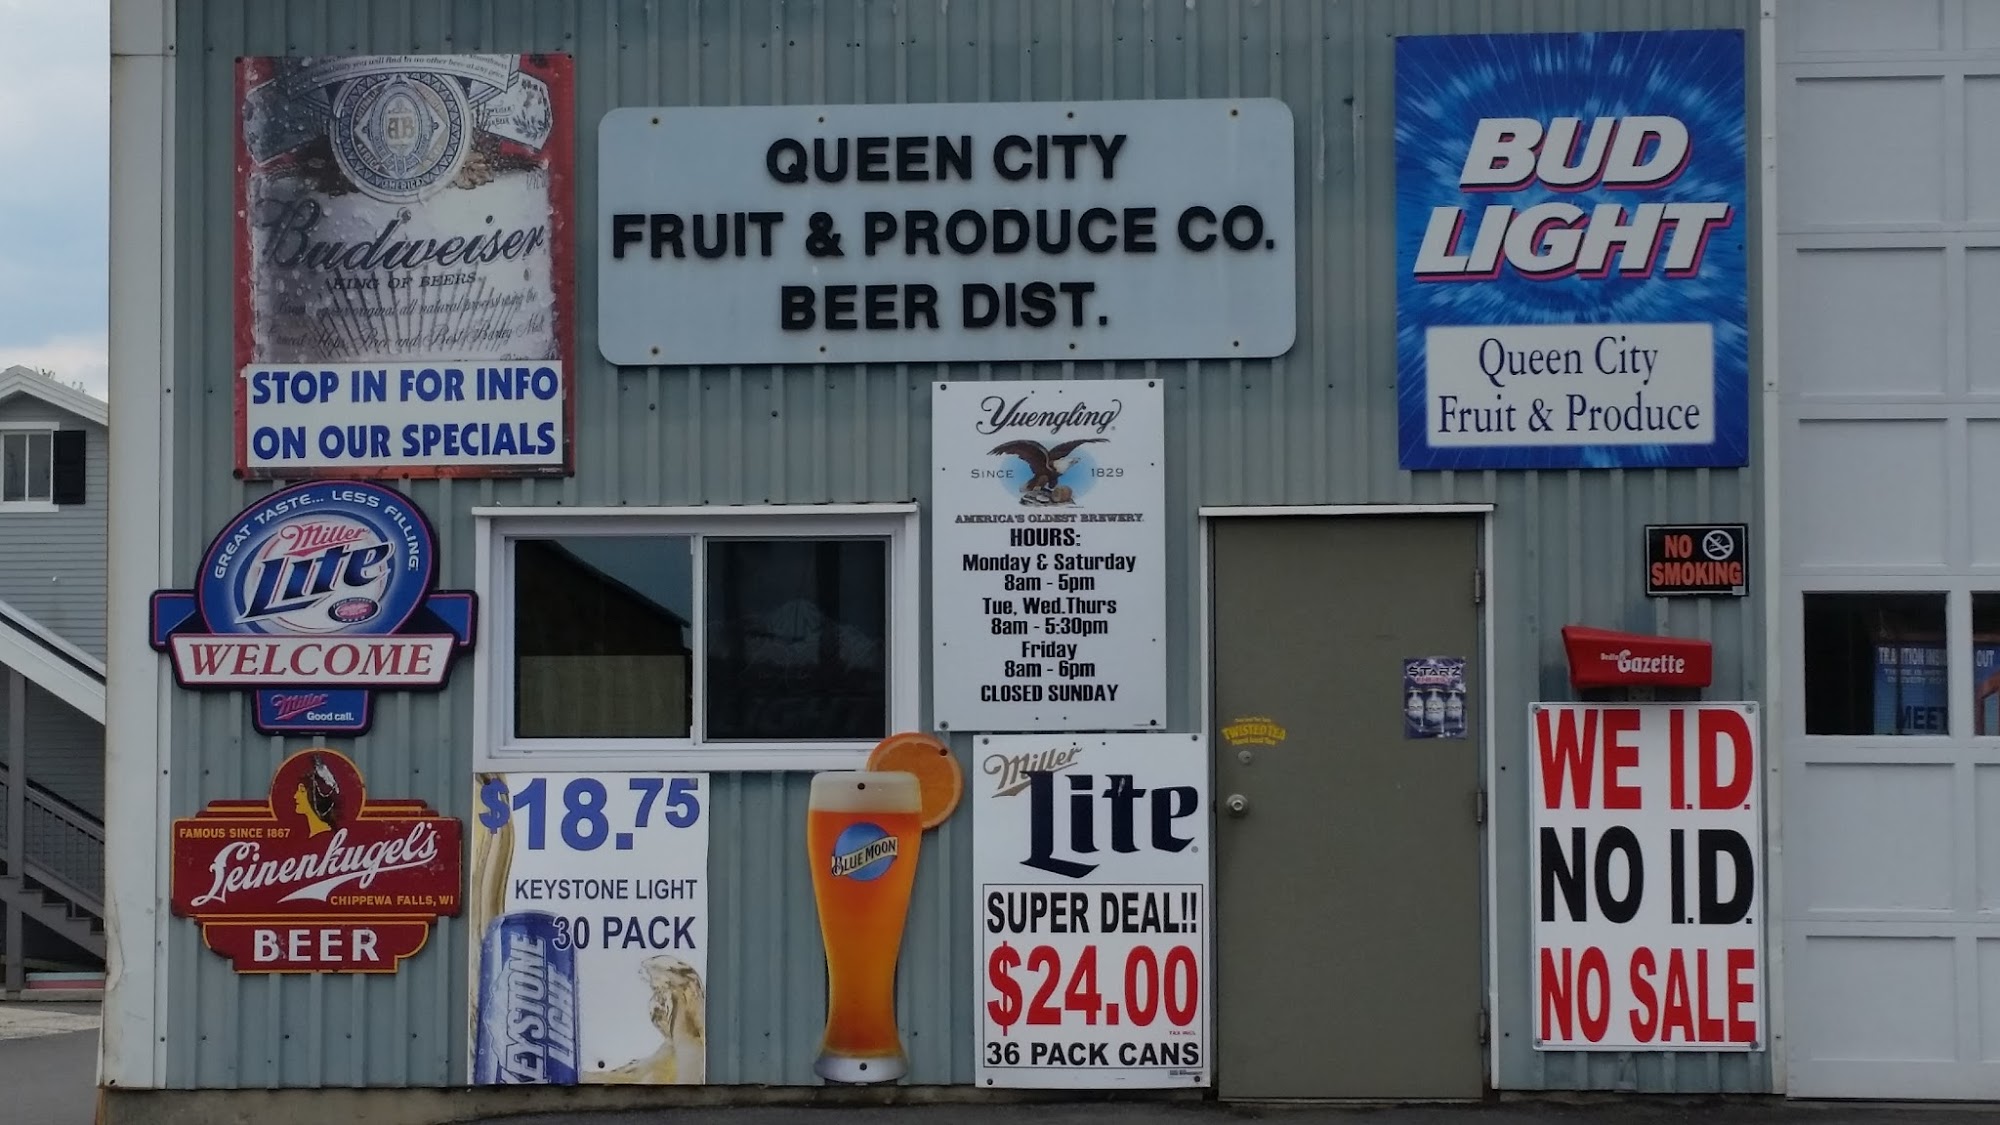 Queen City Fruit & Produce Beer Distributor